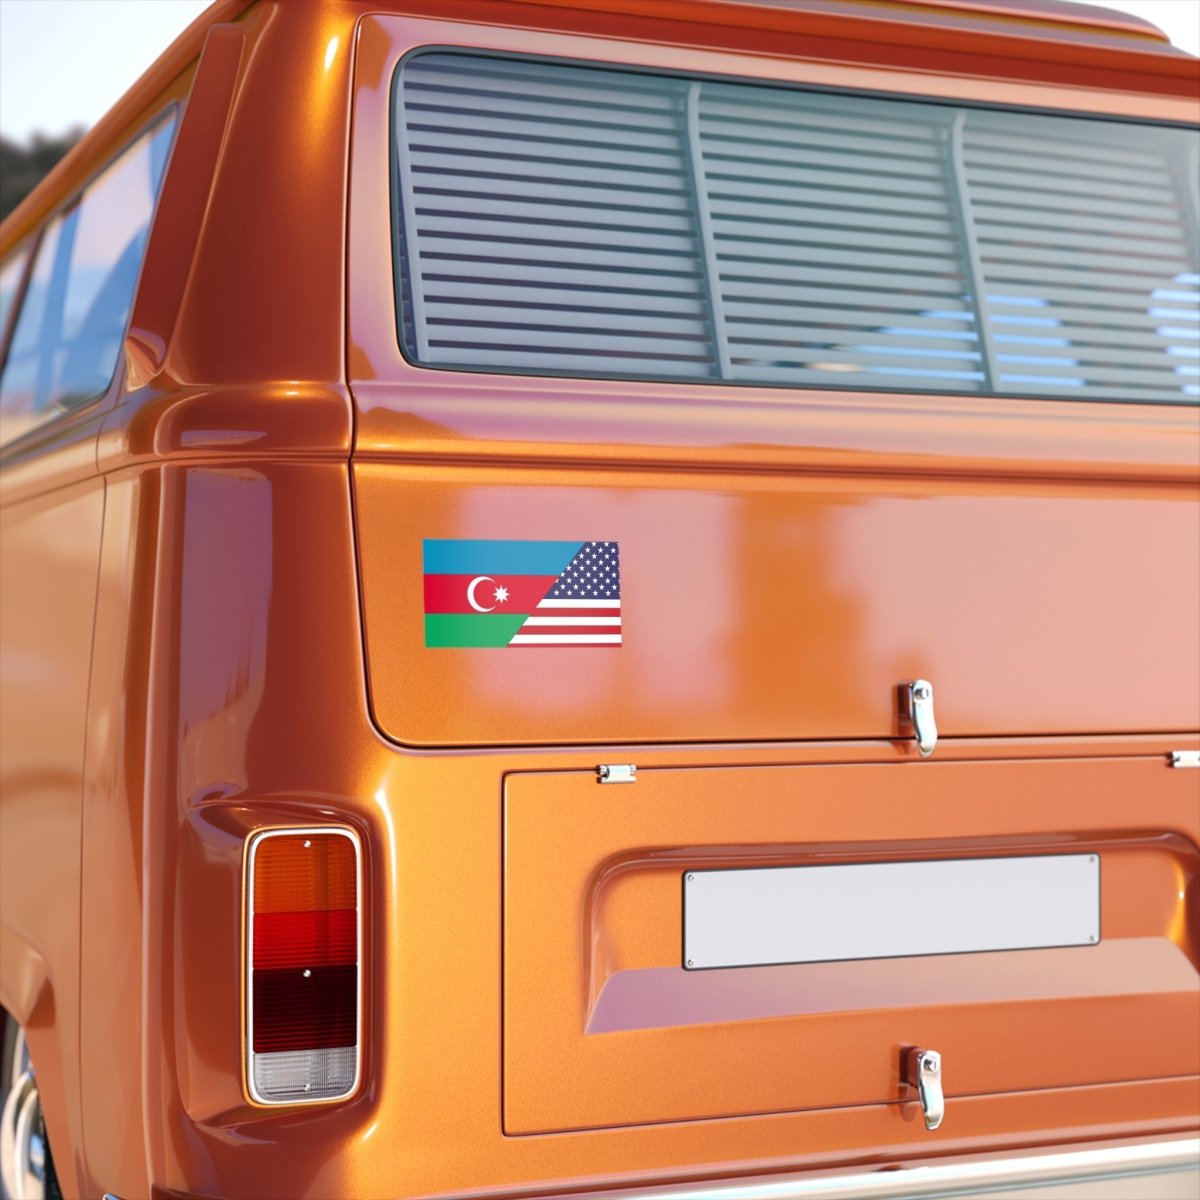 Azerbaijani American Bumper Stickers - Cultics